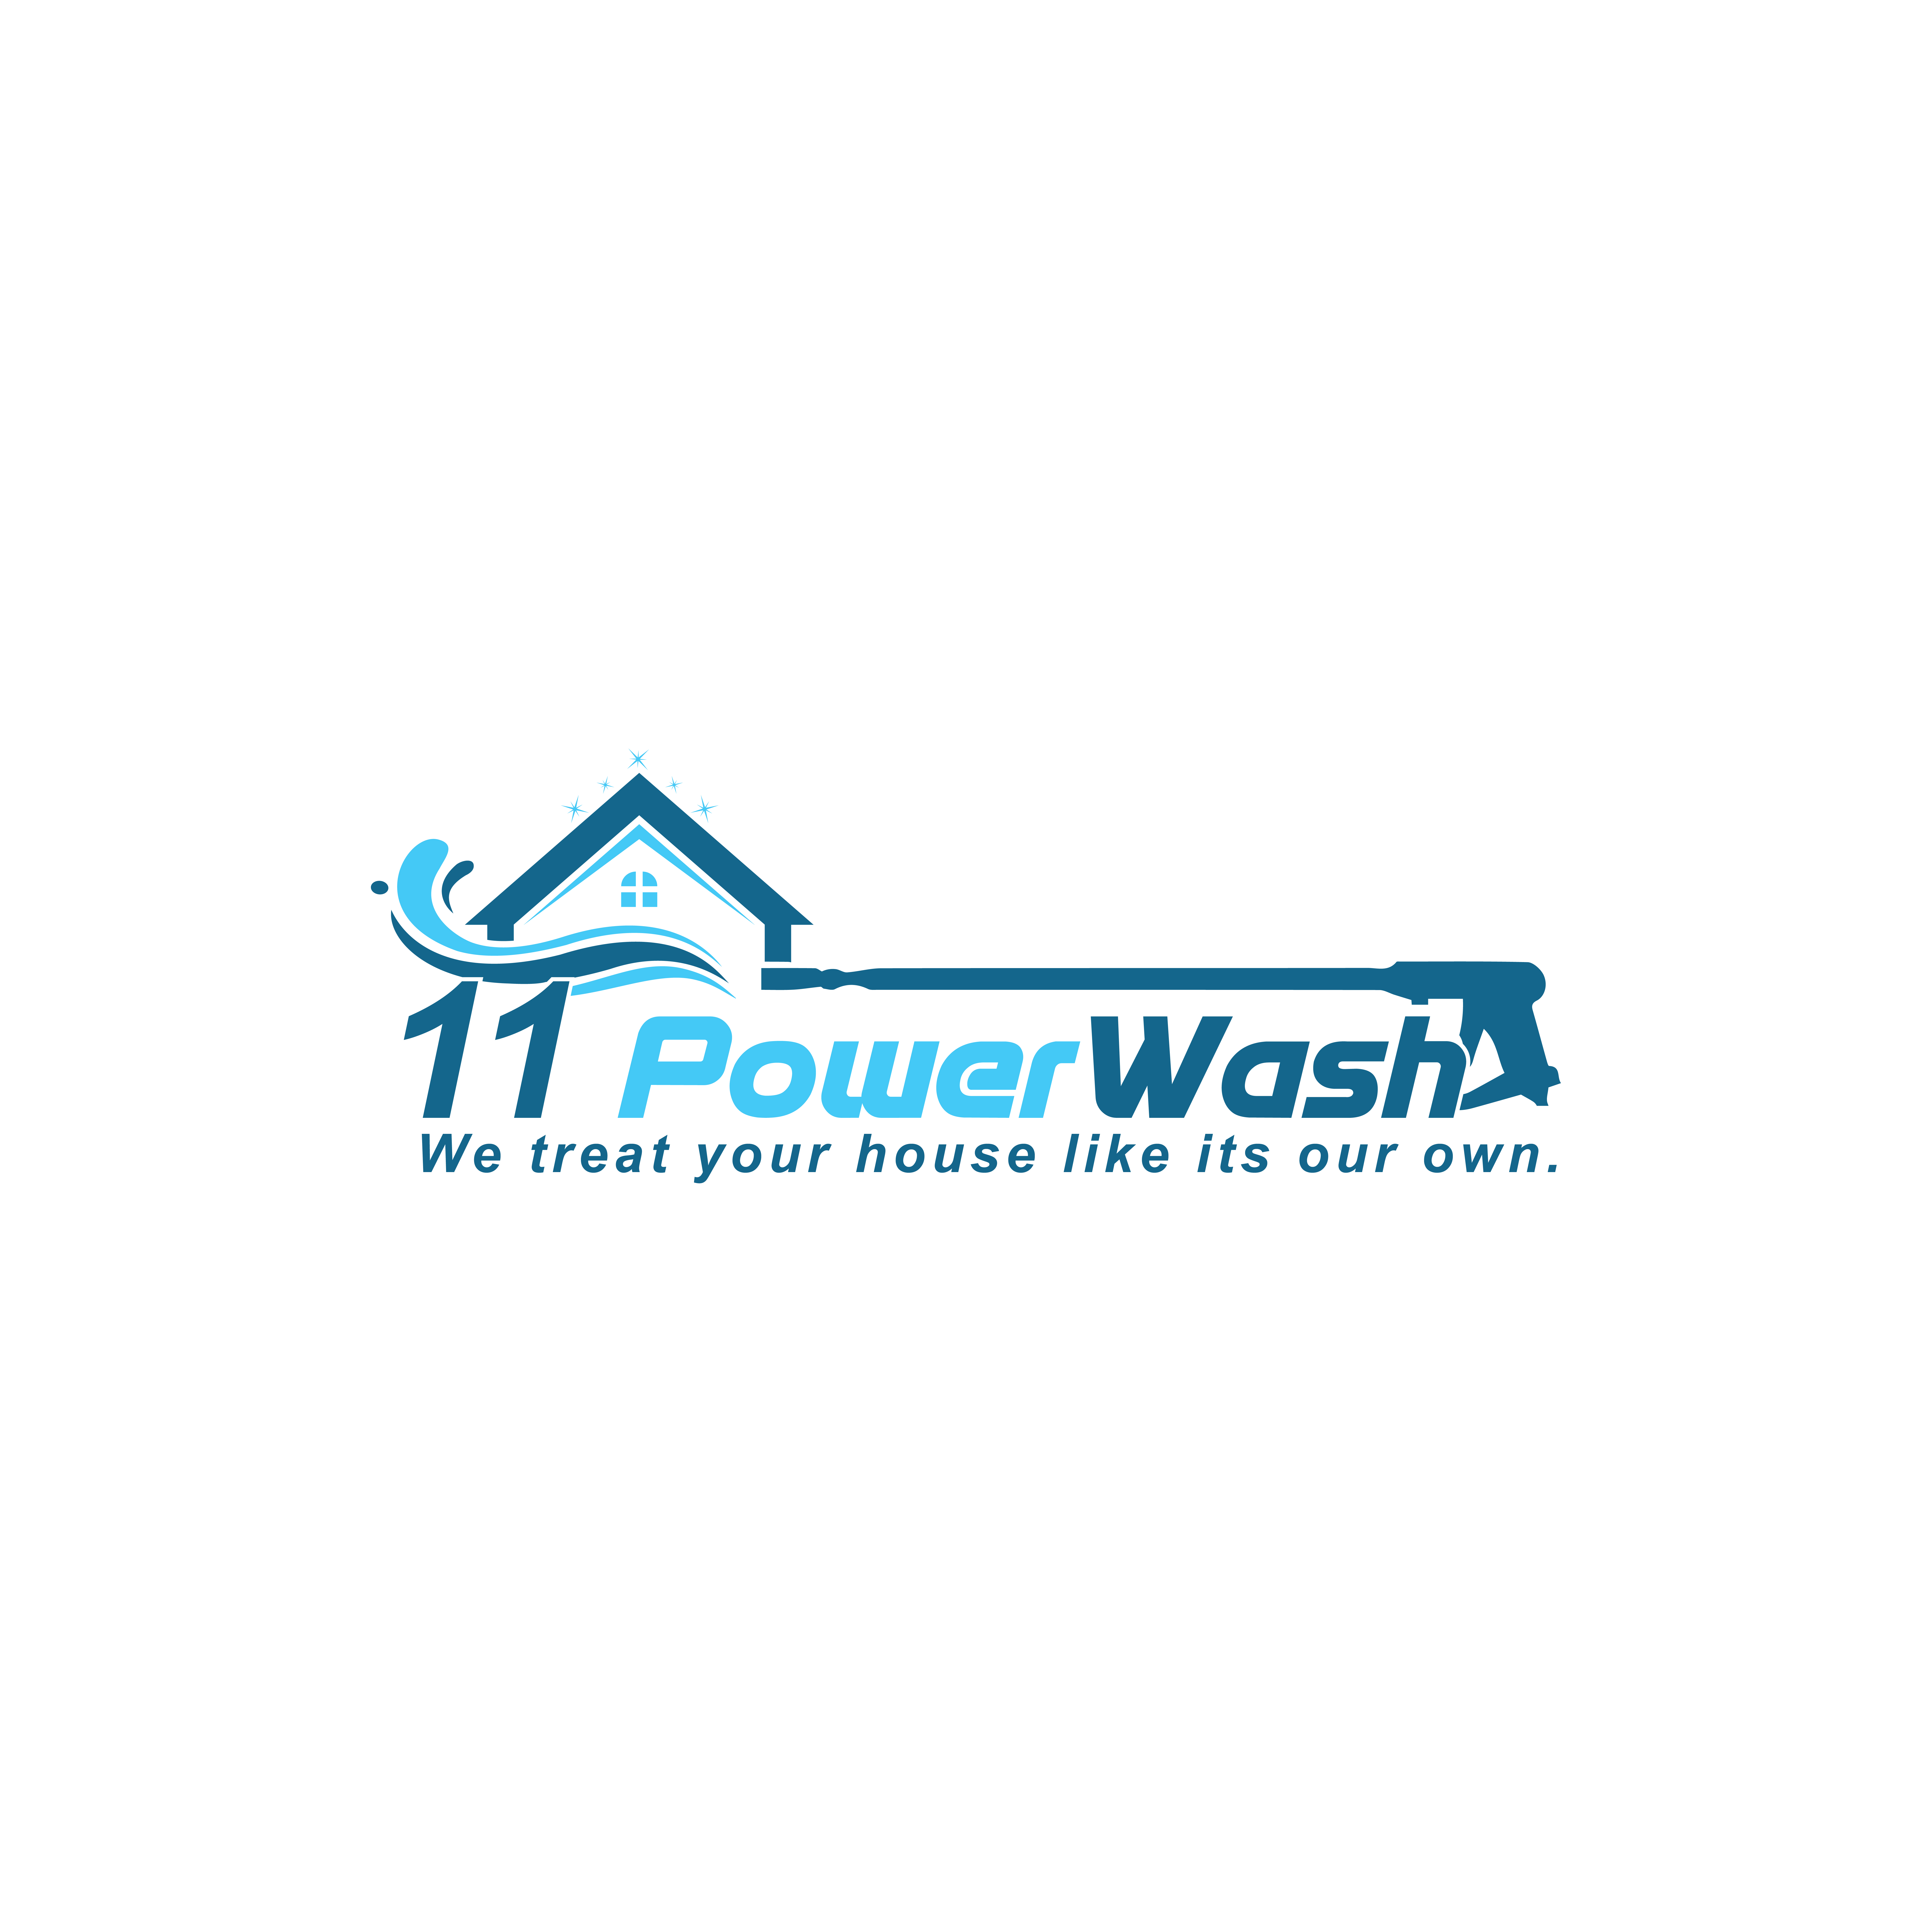 11PowerWash, LLC Logo